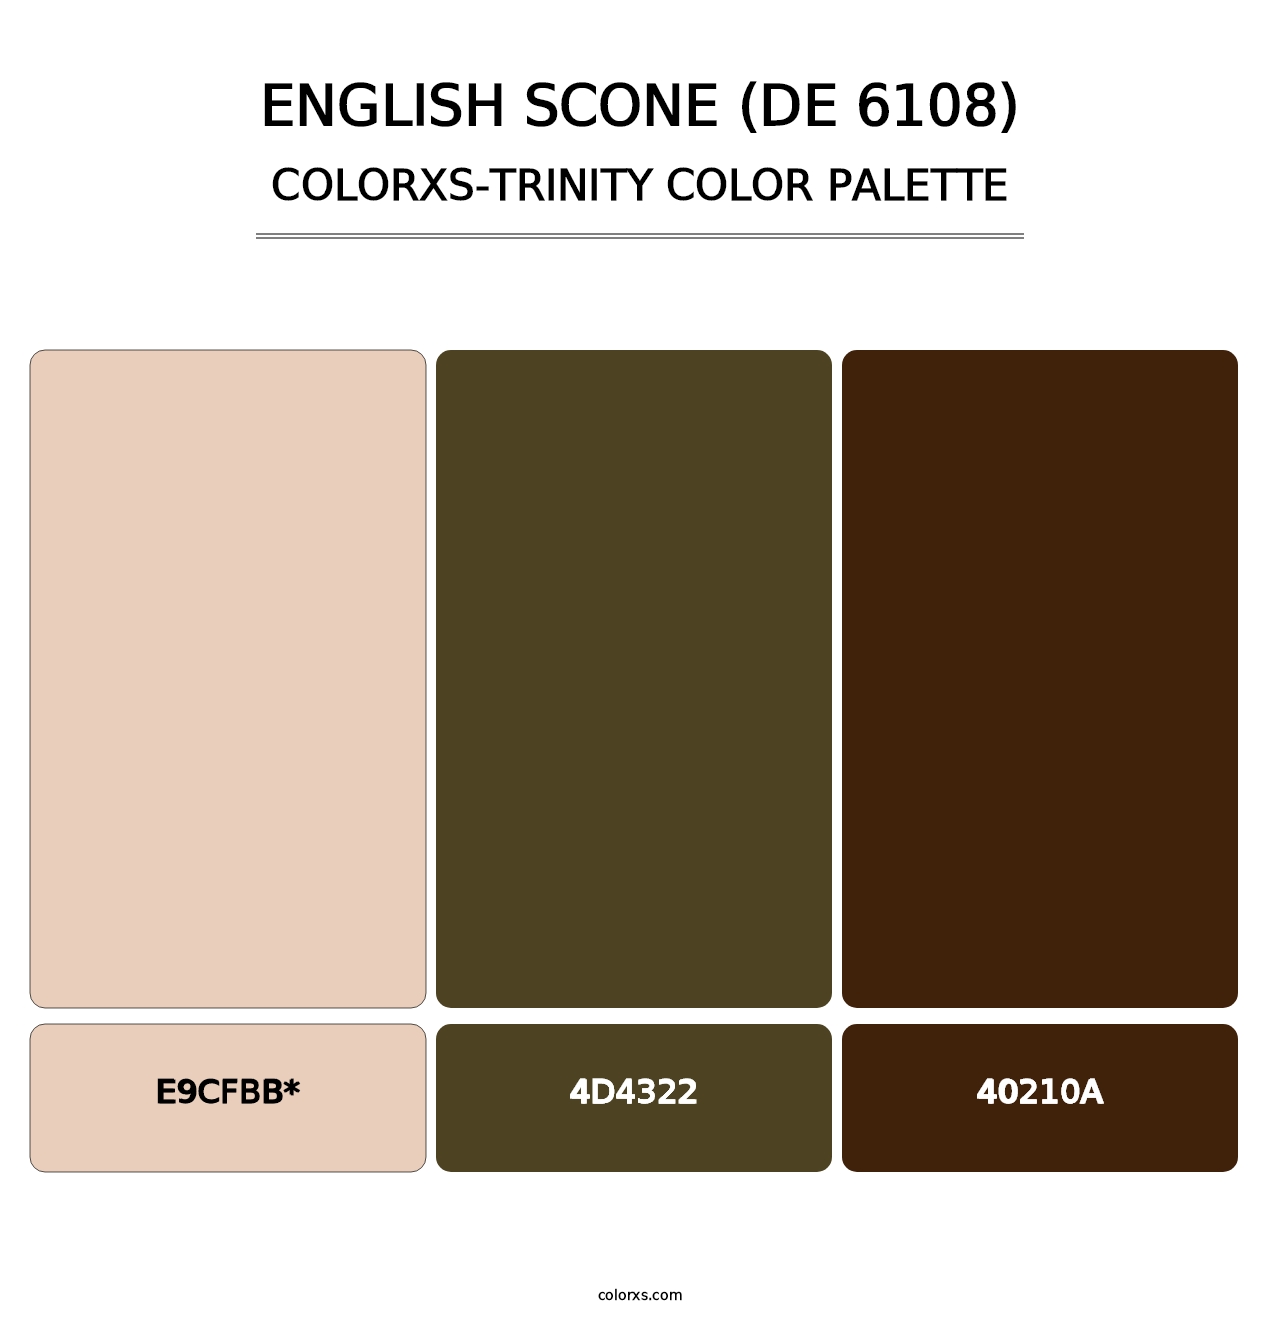 English Scone (DE 6108) - Colorxs Trinity Palette